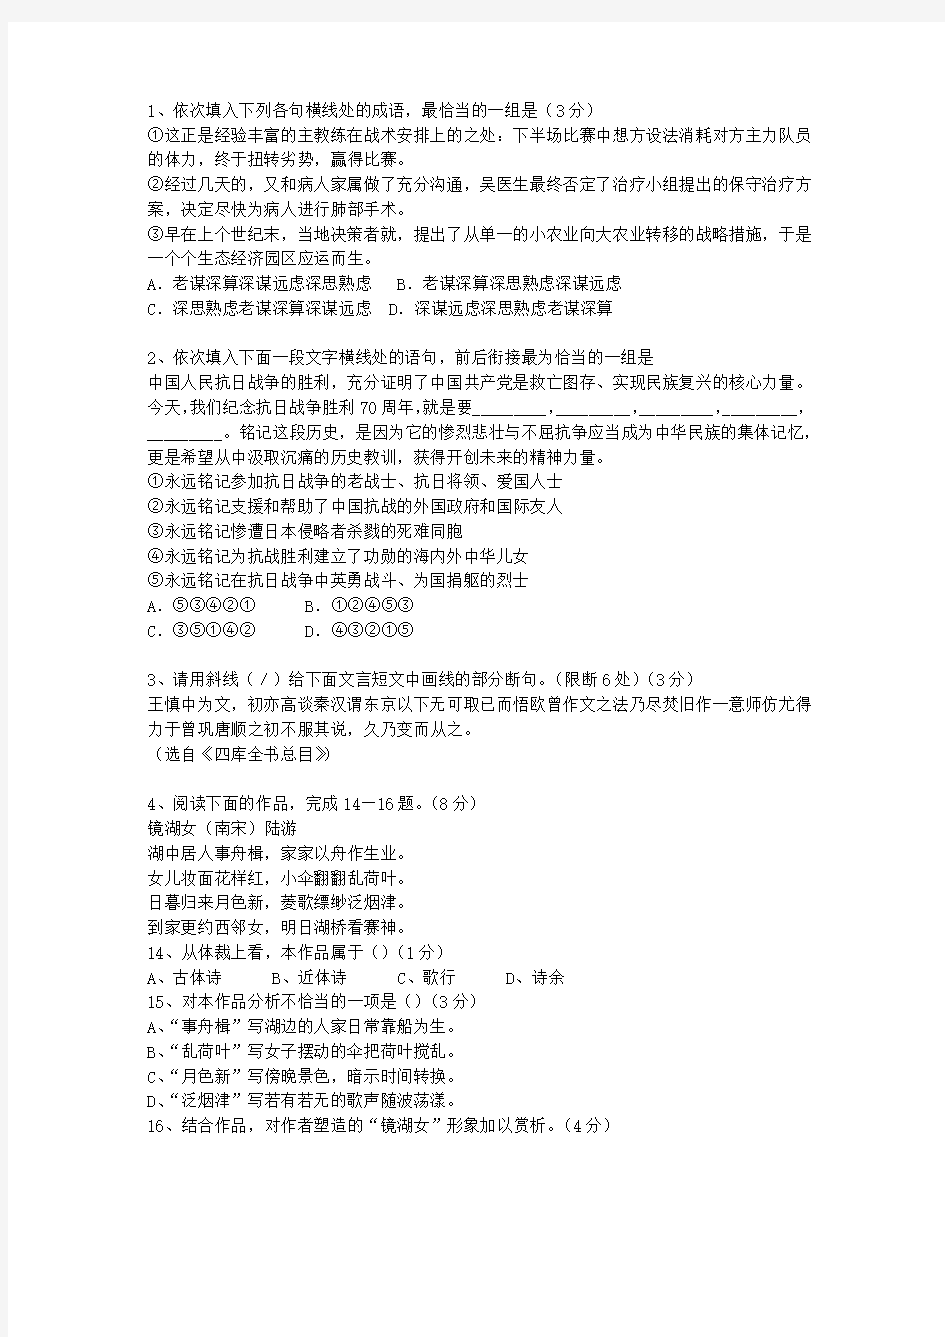 2011青海省高考语文试题及详细答案考试题库